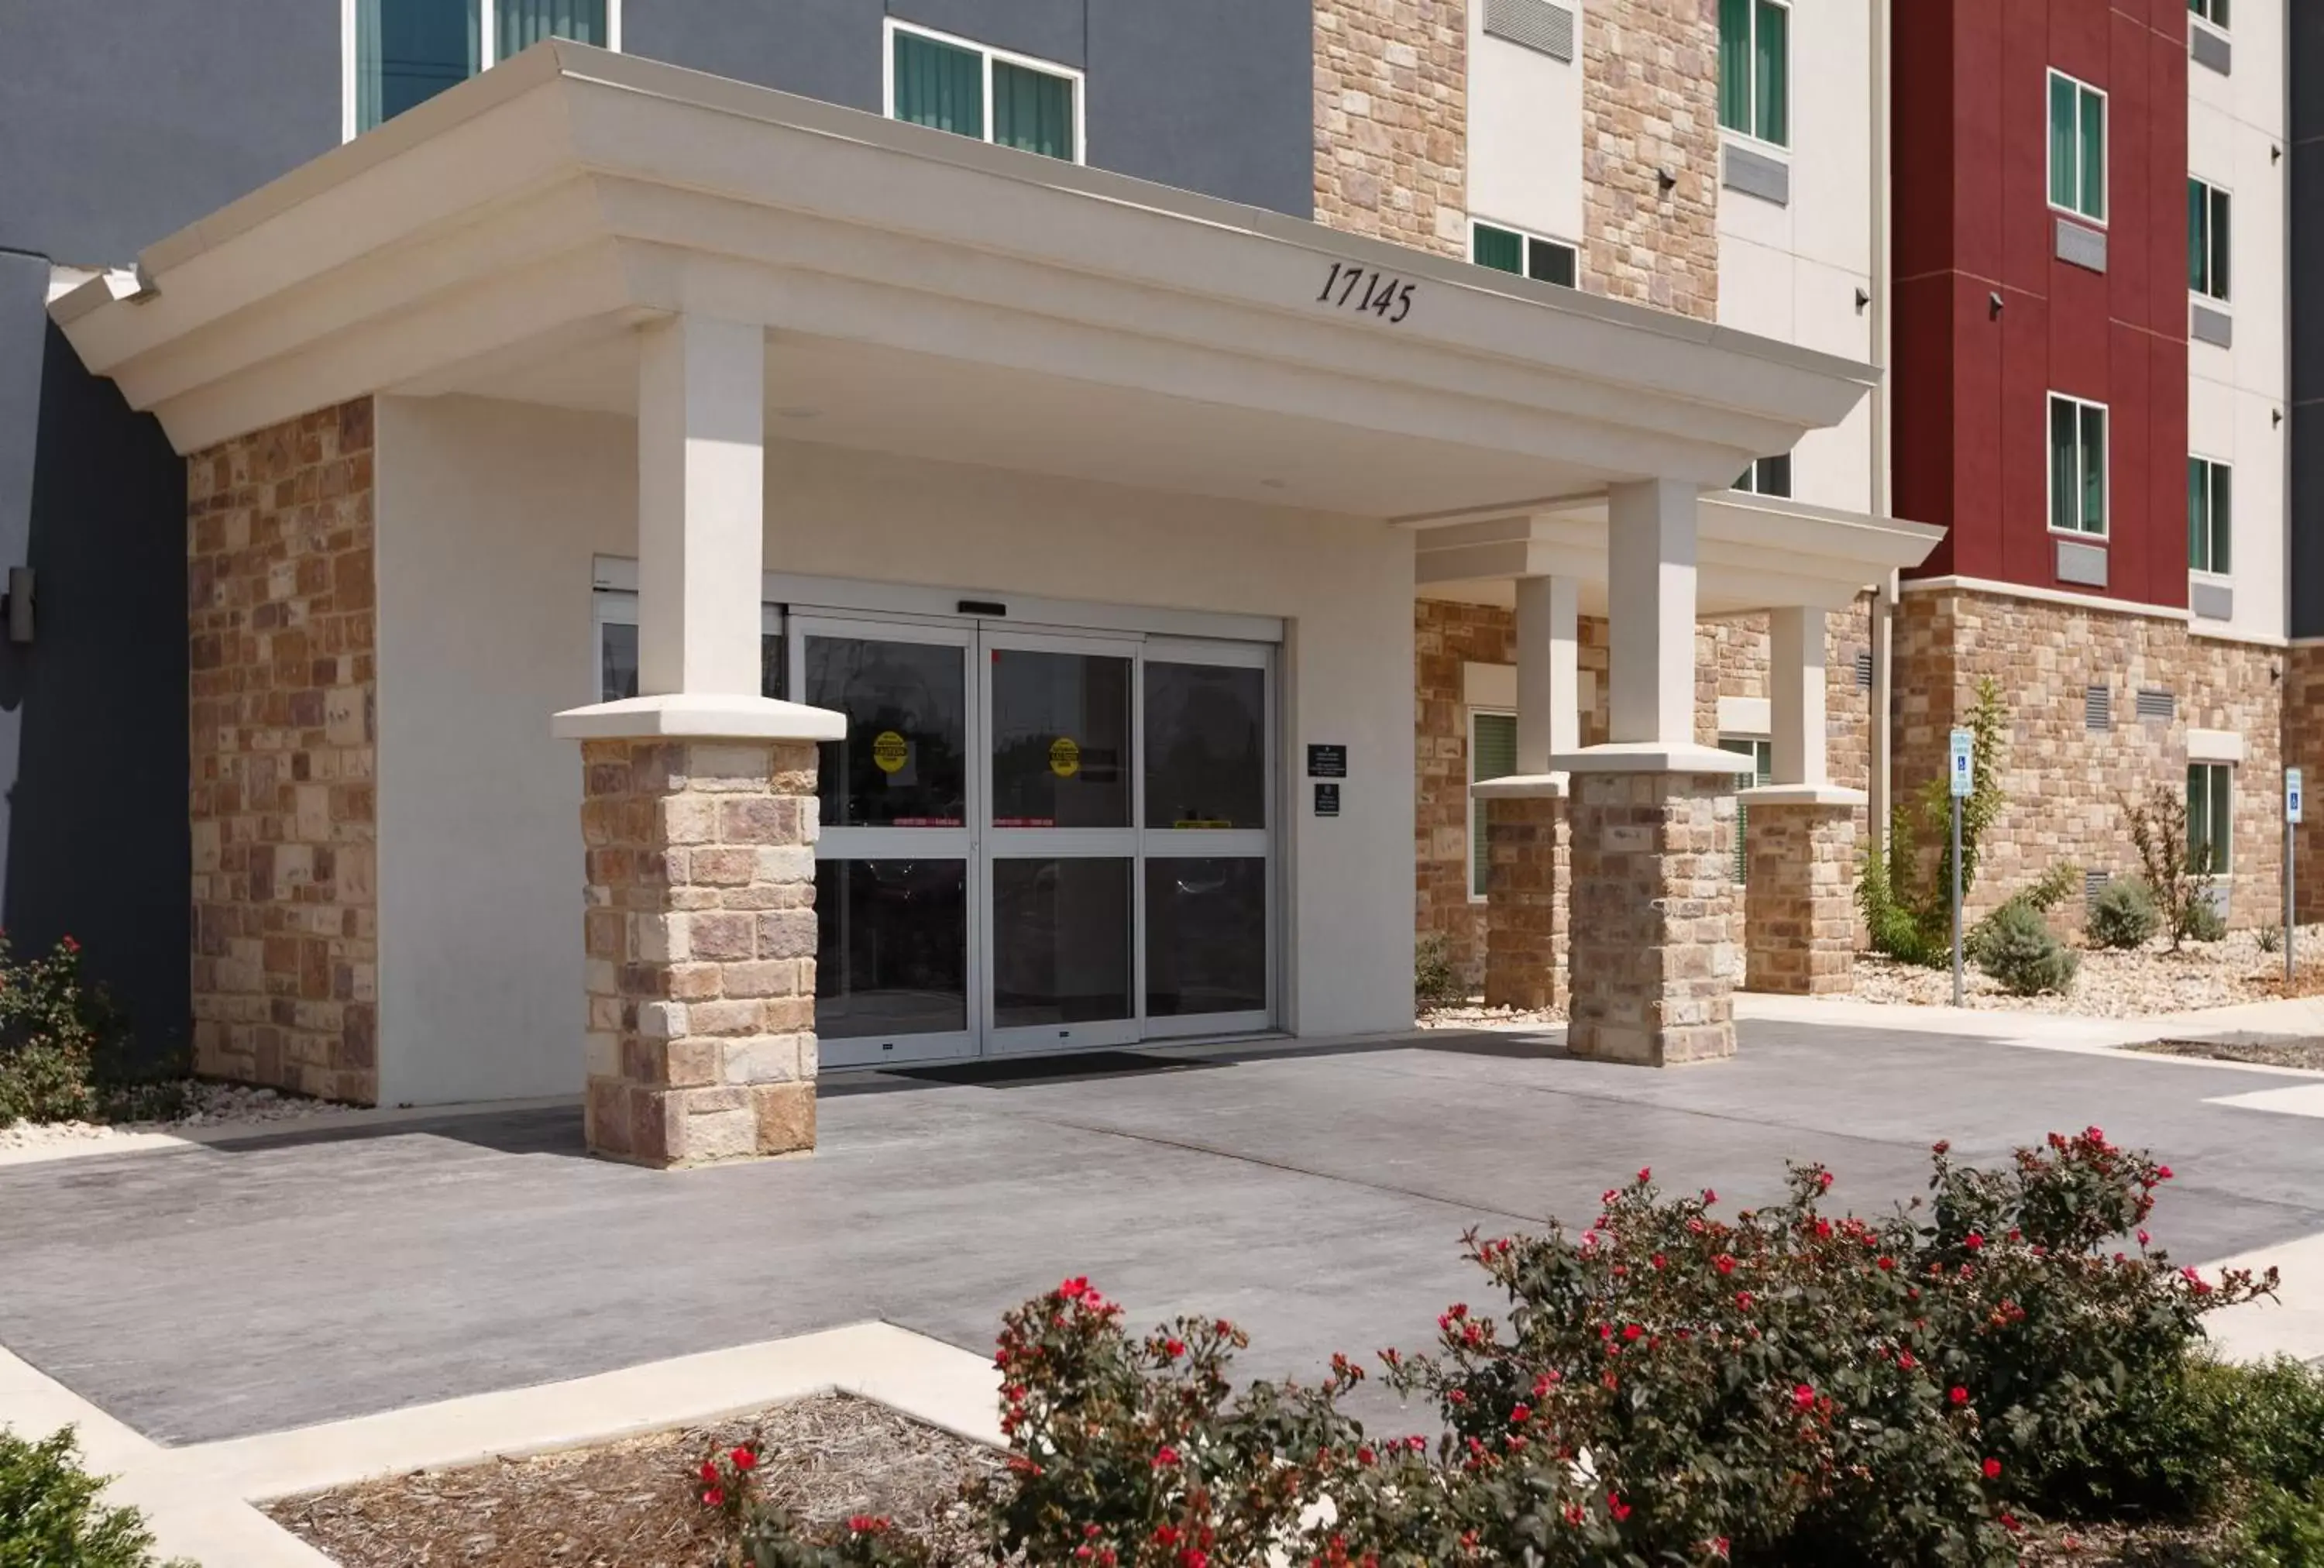 Property building in Candlewood Suites - San Antonio - Schertz, an IHG Hotel